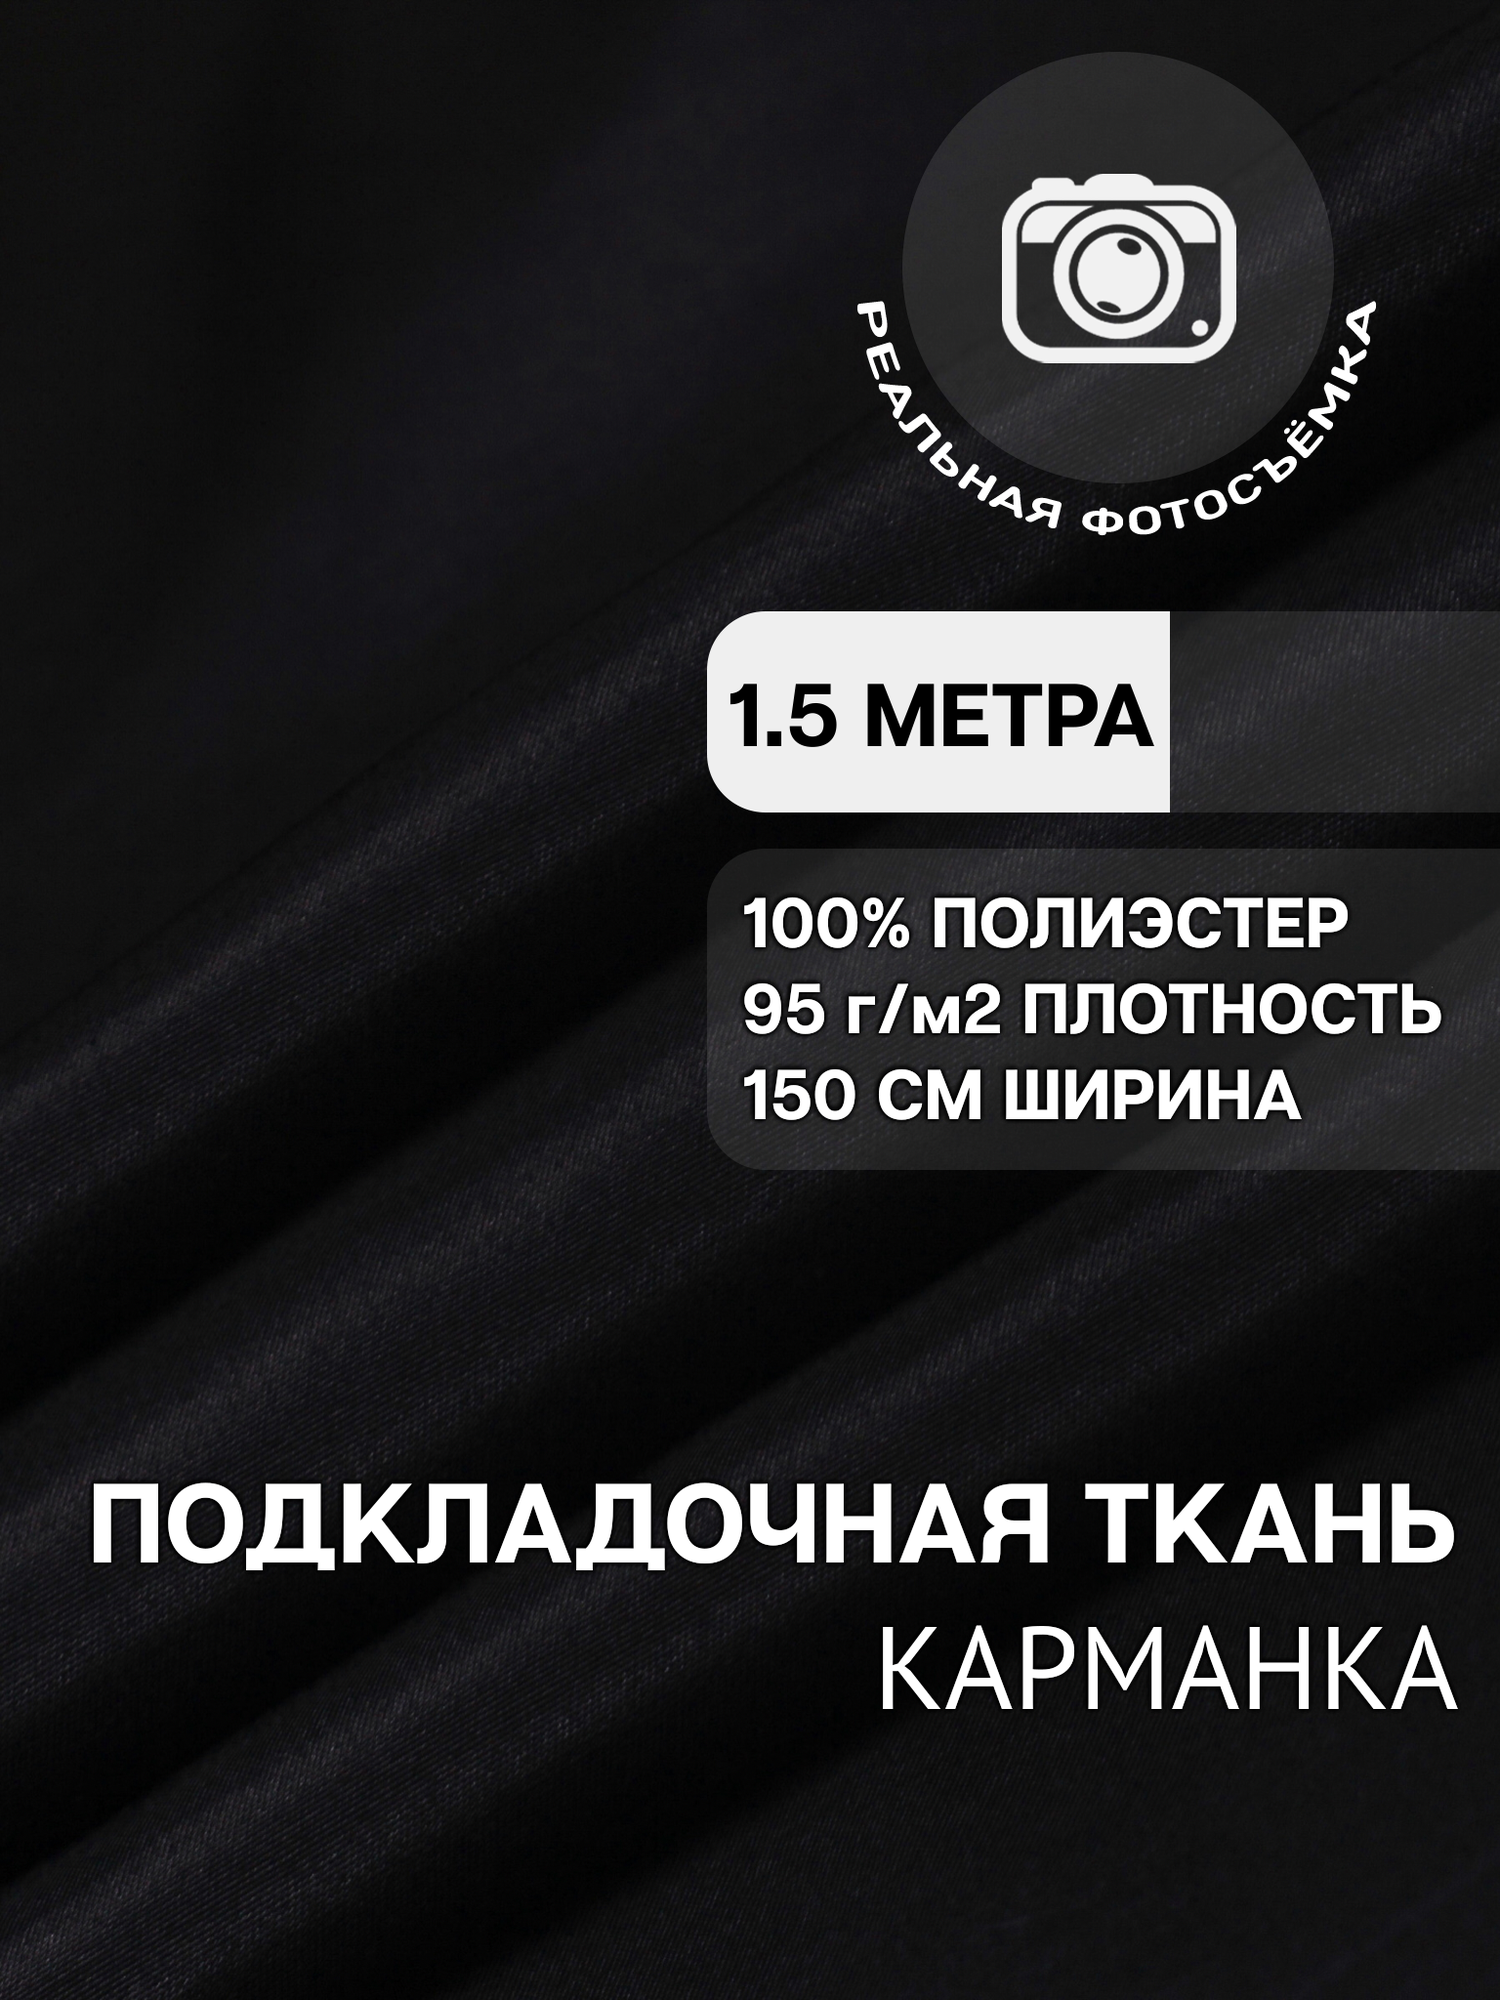 Ткань карманная подкладочная чёрная для одежды MDC FABRICS K95/4 для шитья. Полиэстер 100%. Отрез 1.5 метра